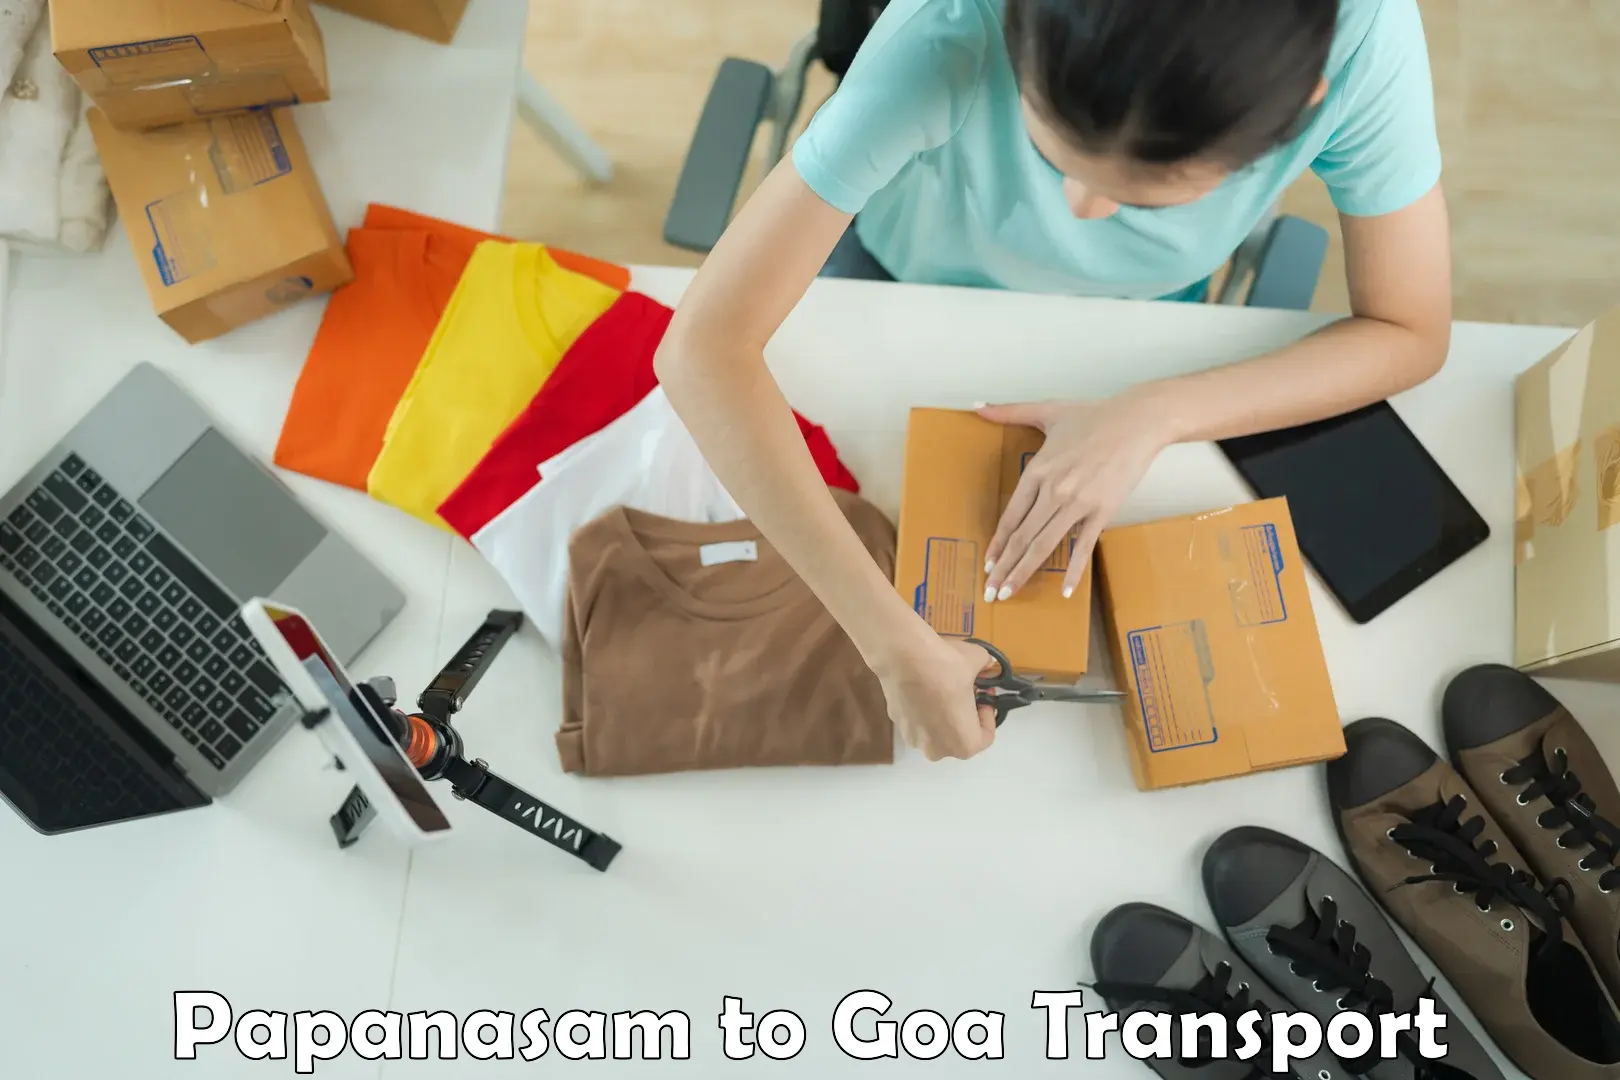 Commercial transport service Papanasam to Canacona